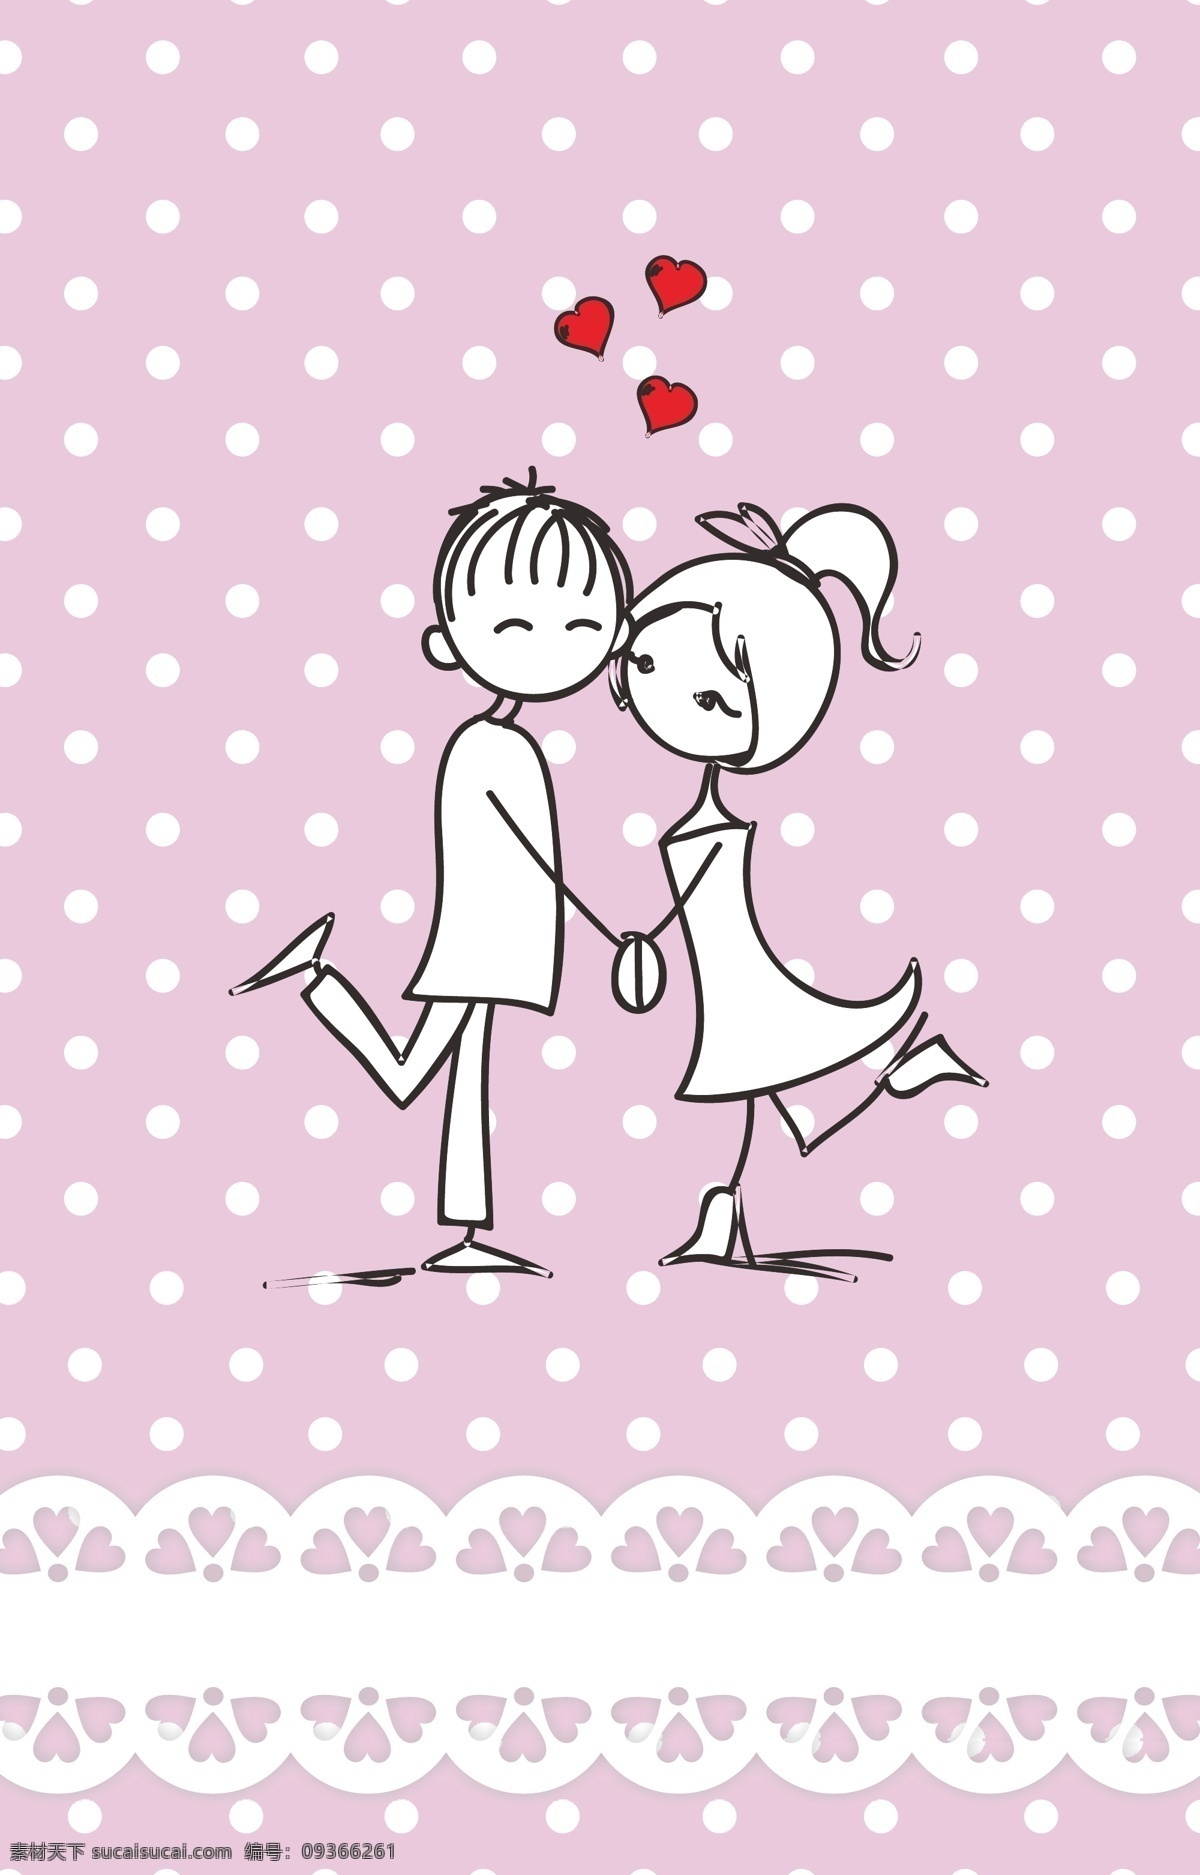 粉色 情人节 爱心 背景 卡通 情侣 花纹 海报 矢量素材 高清 设计图 幸福